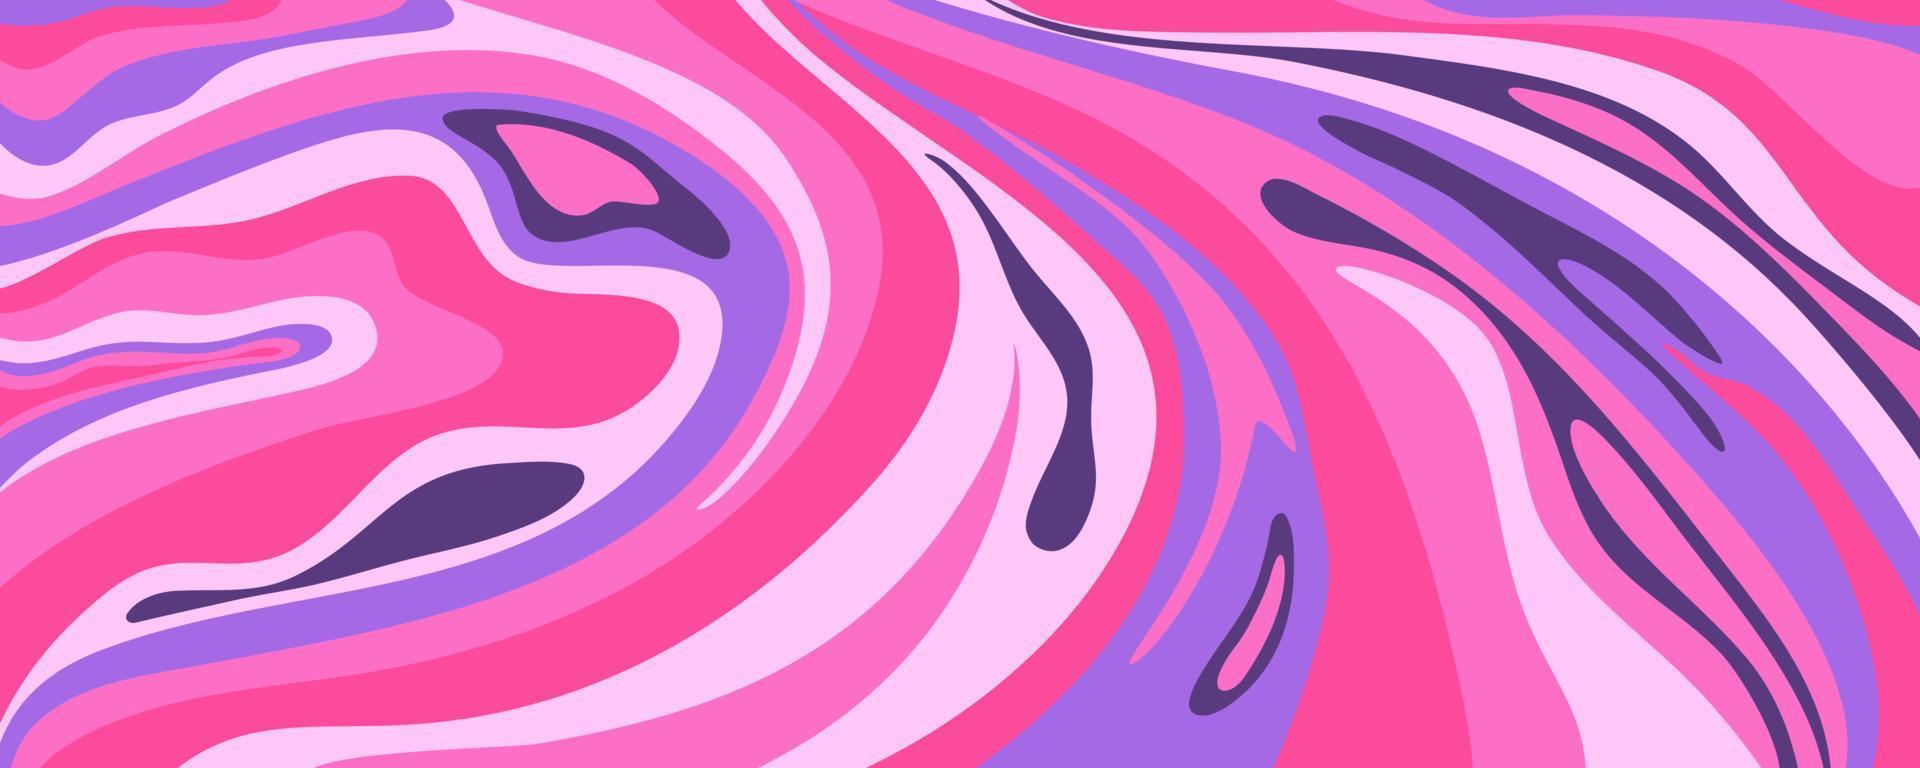 vague arrière-plan y2k pour un design rétro. fond rose en marbre groovy liquide. motif y2k violet dans un style moderne rose. fond d'écran vague rétro psychédélique vecteur